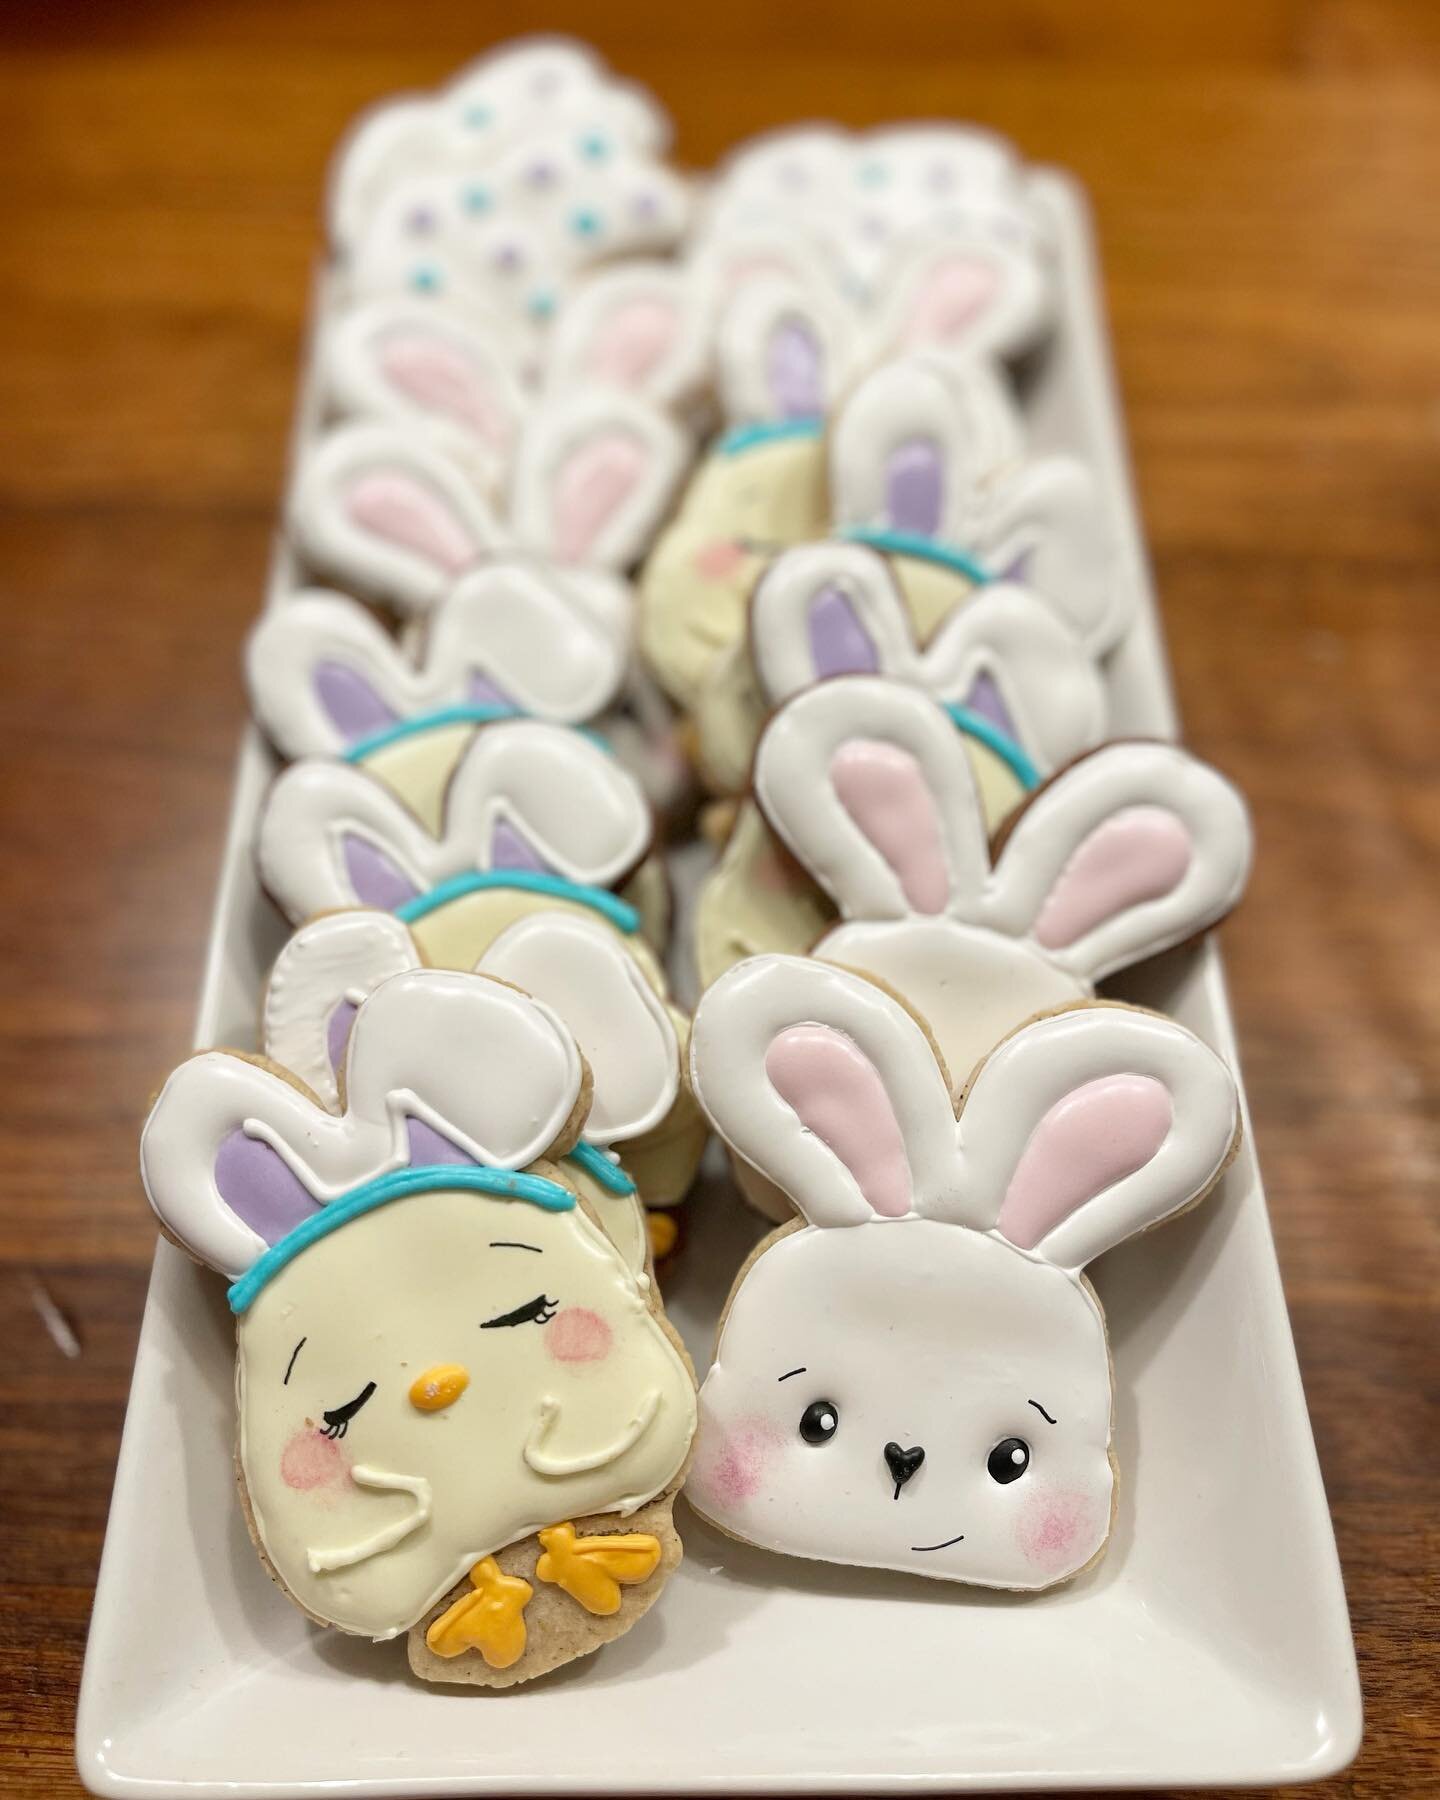 Some more Easter cookies! #customcookies #eastercookies